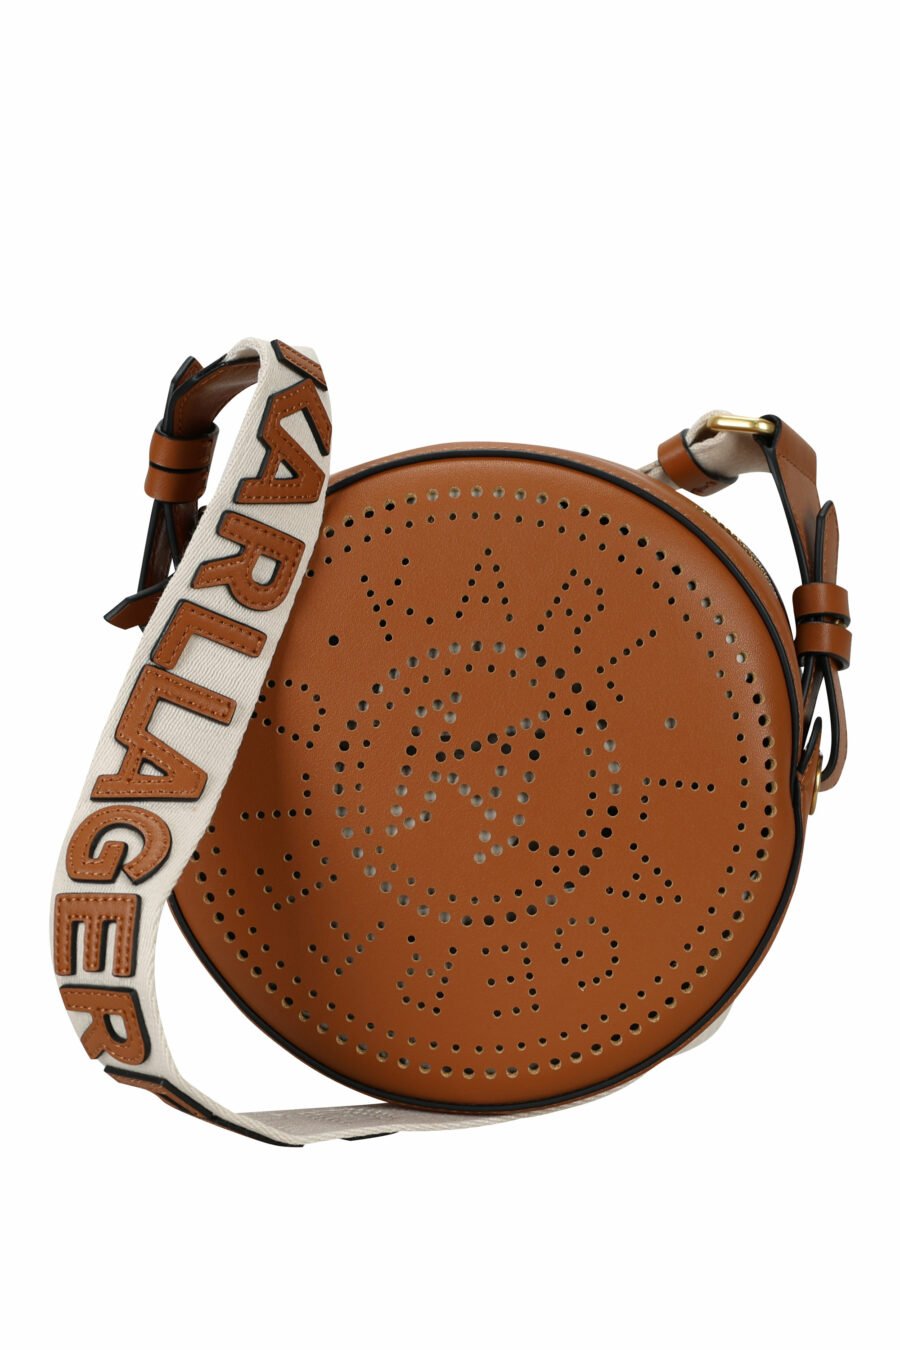 Tote bag mini marrón circular con maxilogo perforado - 8720744234746